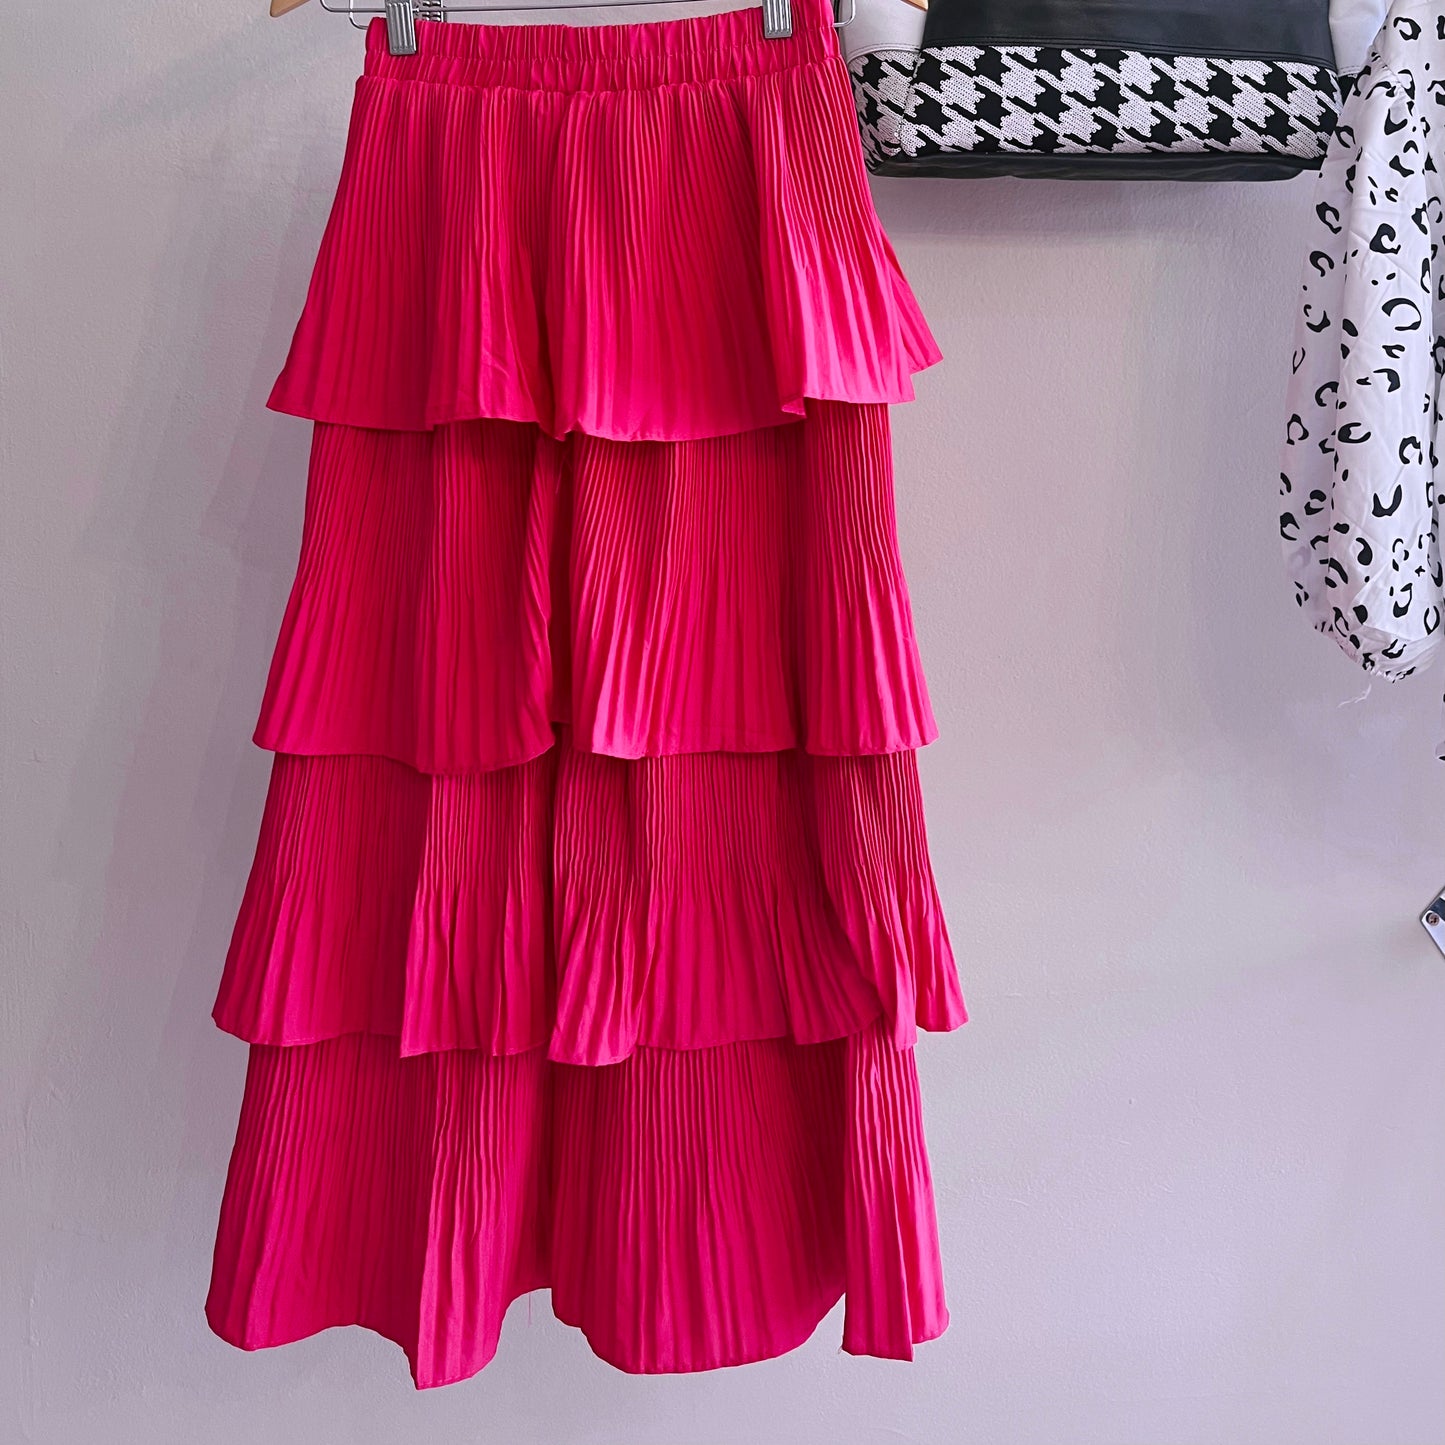 Bright Pink Ruffle Skirt